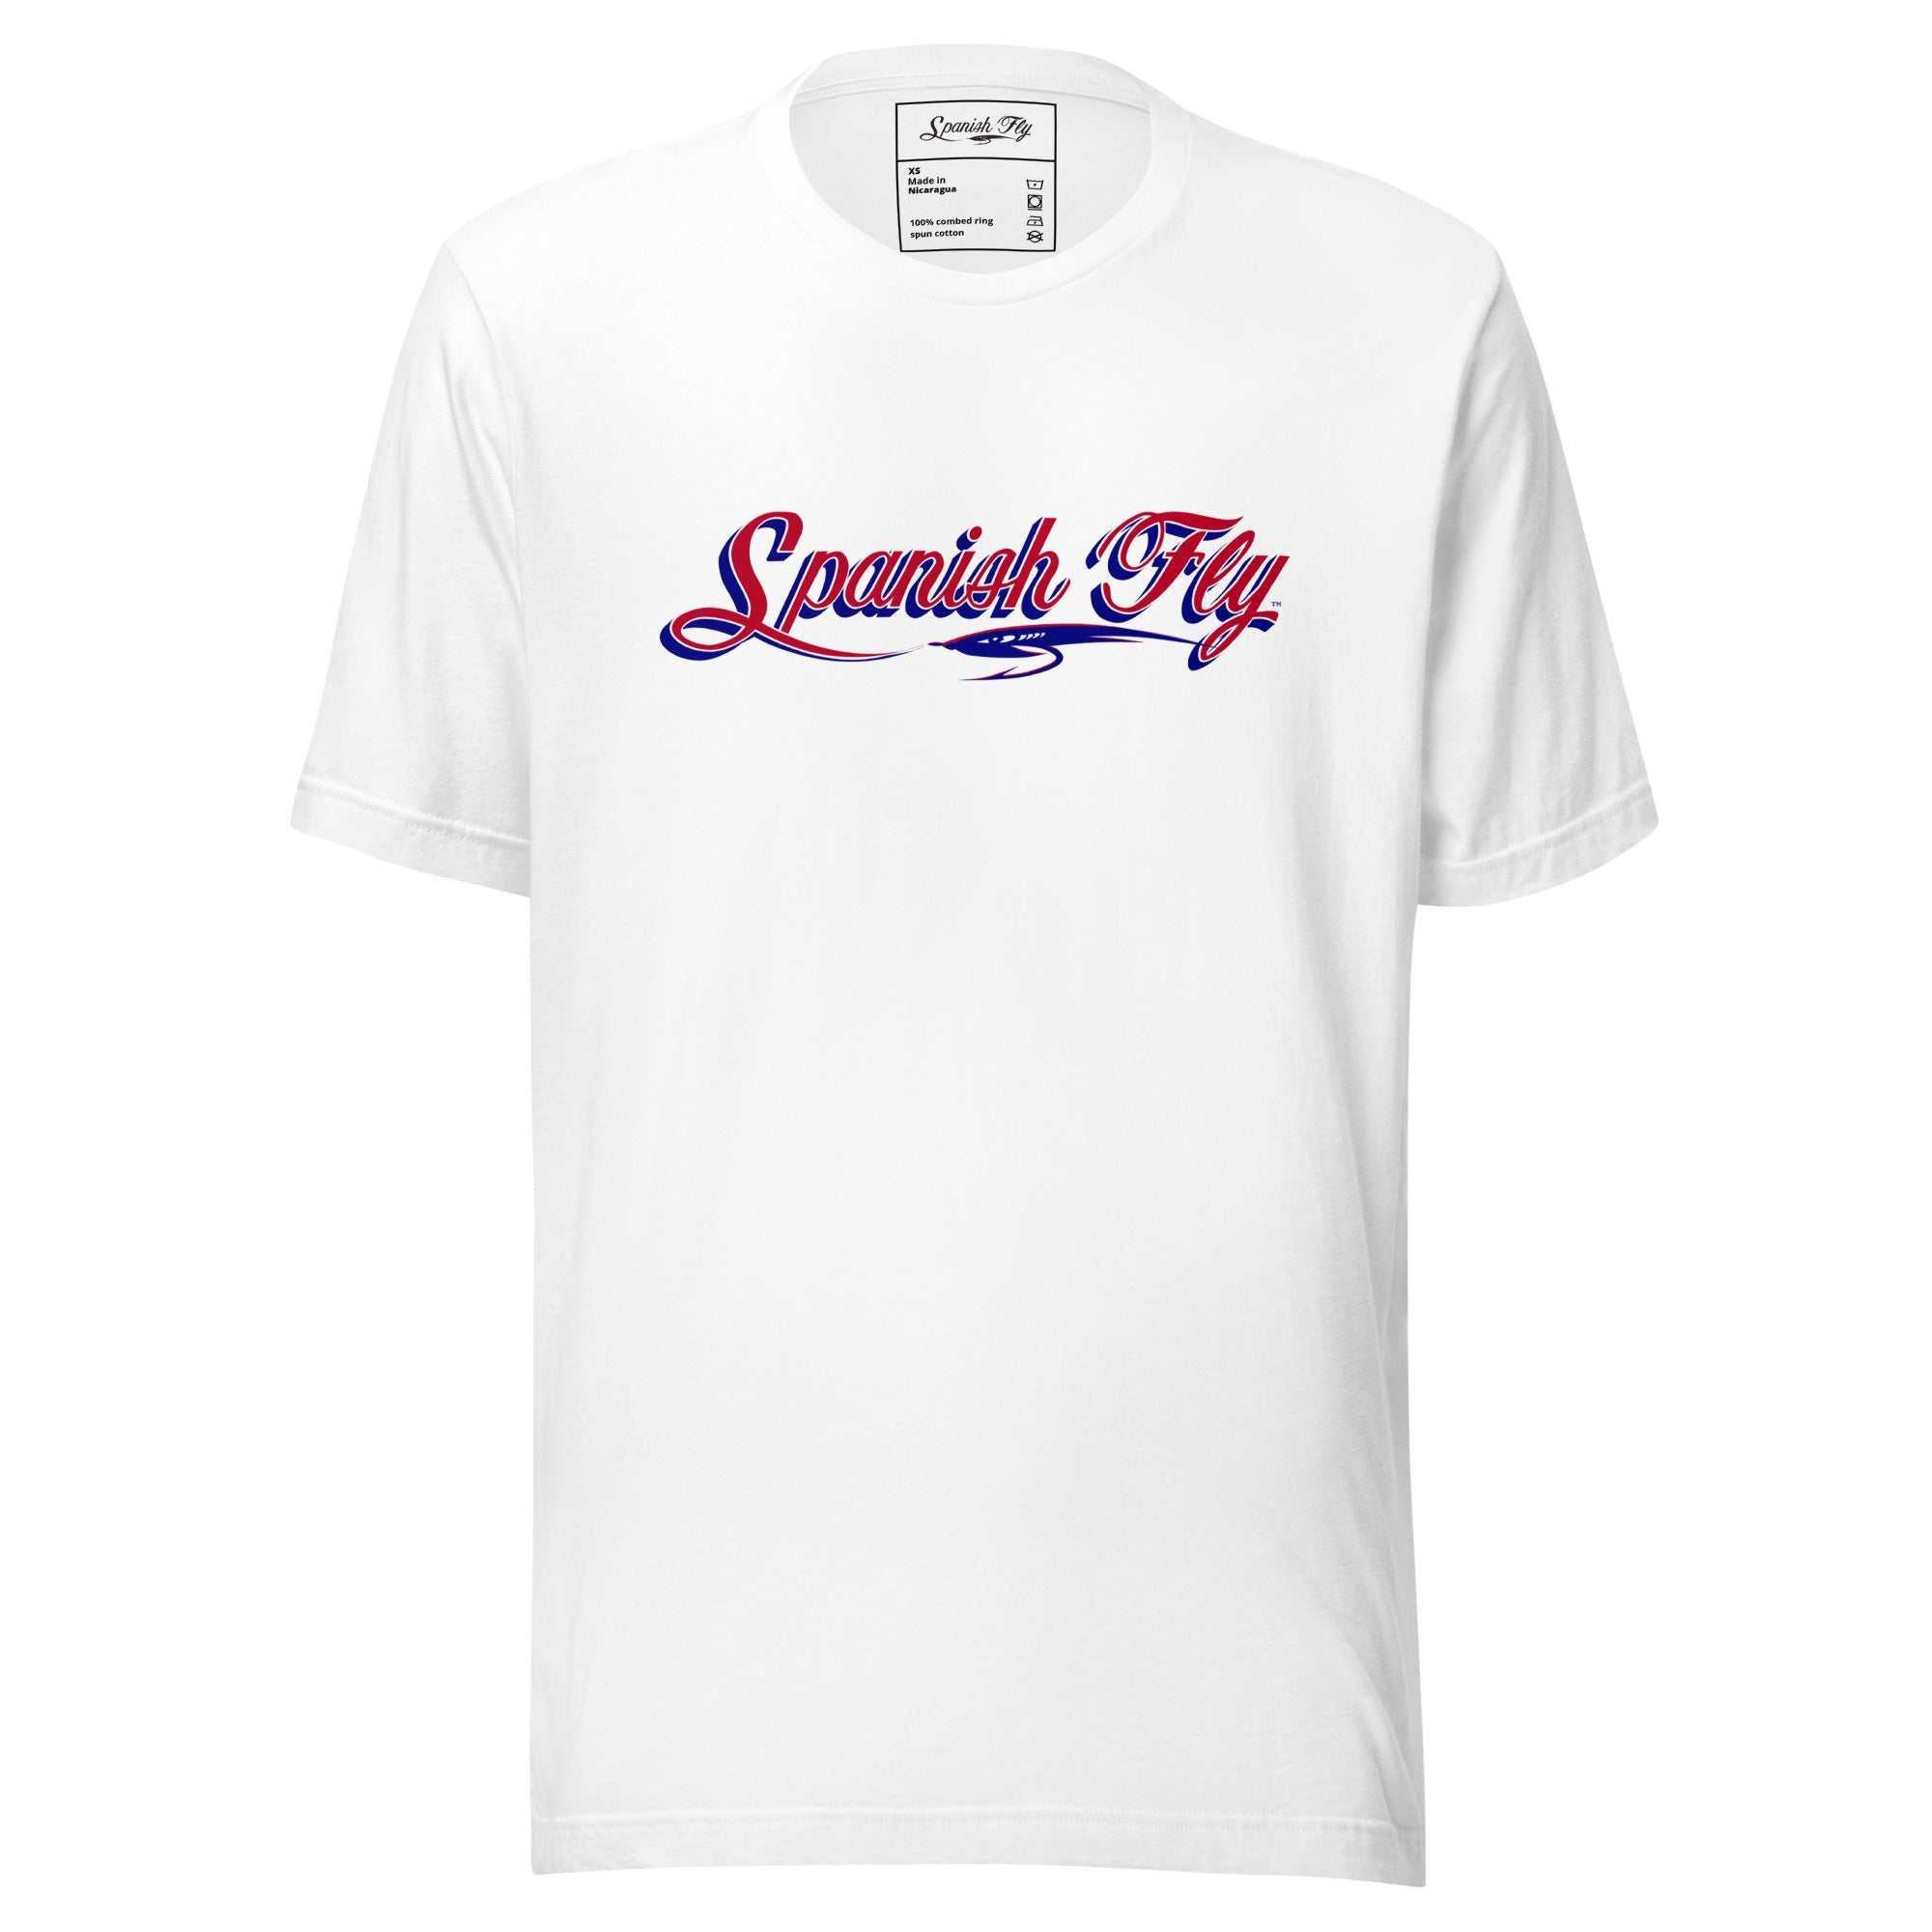 Men's Red White Blue Spanish Fly Logo T-Shirt